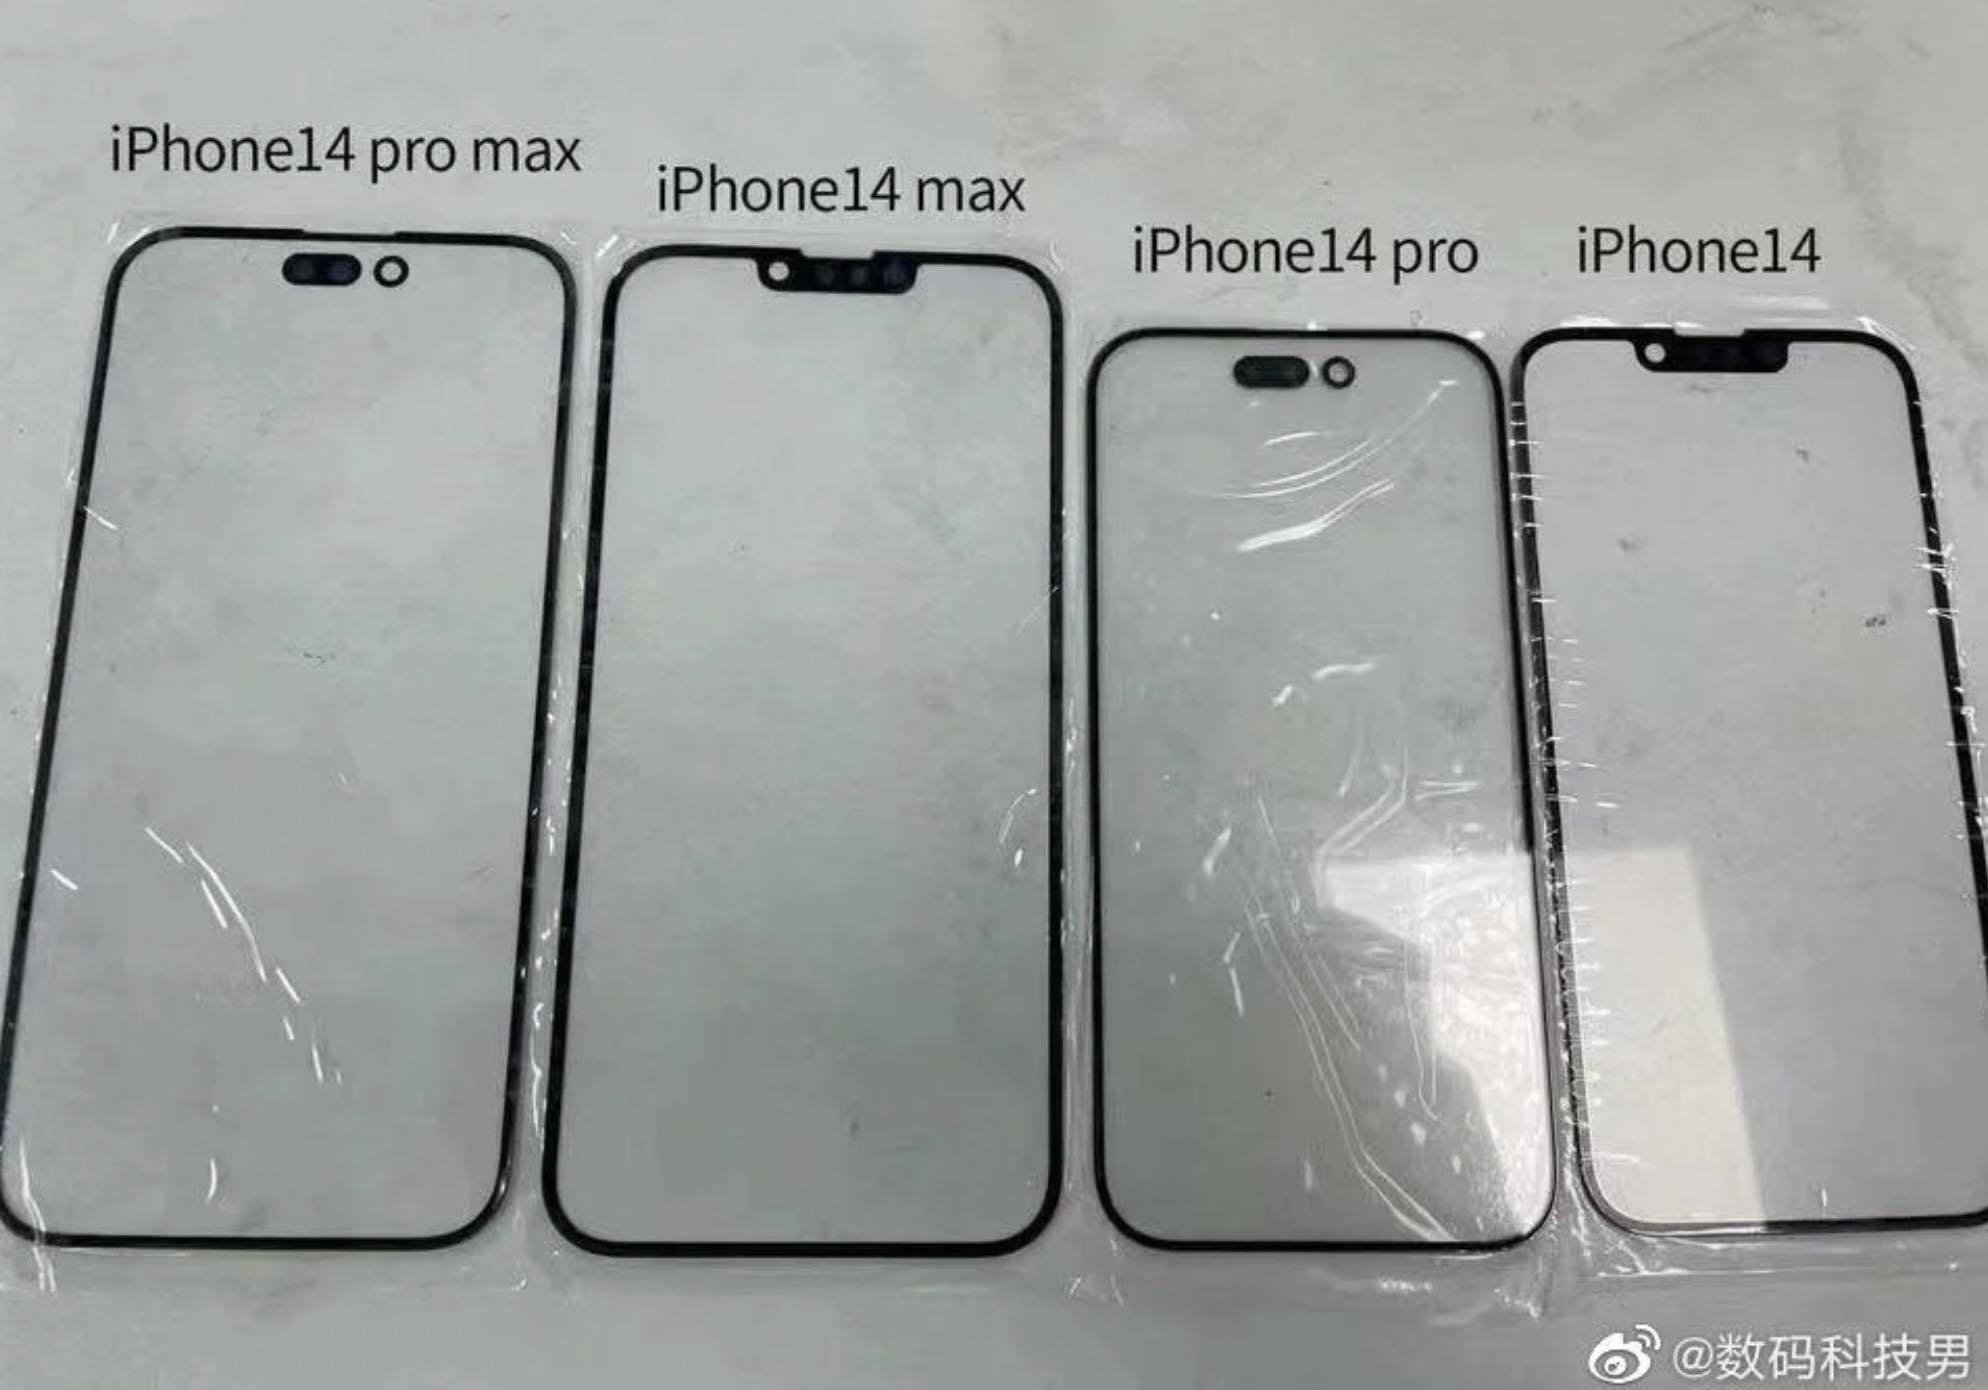 Przednie panele iPhone 14 | 14 Pro i 14 Max na zdjęciu ciekawostki przedni panel iphone 14 pro na zdjeciu, przedni panel iphone 14 pro max na zdjeciu, przedni panel iphone 14 na zdjeciu, przedni panel iphone 14 max na zdjeciu, iPhone 14 Pro, iPhone 14  W sieci pojawiło się zdjęcie pokazujące jak będą wyglądać przednie panele wszystkich tegorocznych smartfonów Apple - iPhone 14, 14 Max, 14 Pro i 14 Pro Max. ip14 panel